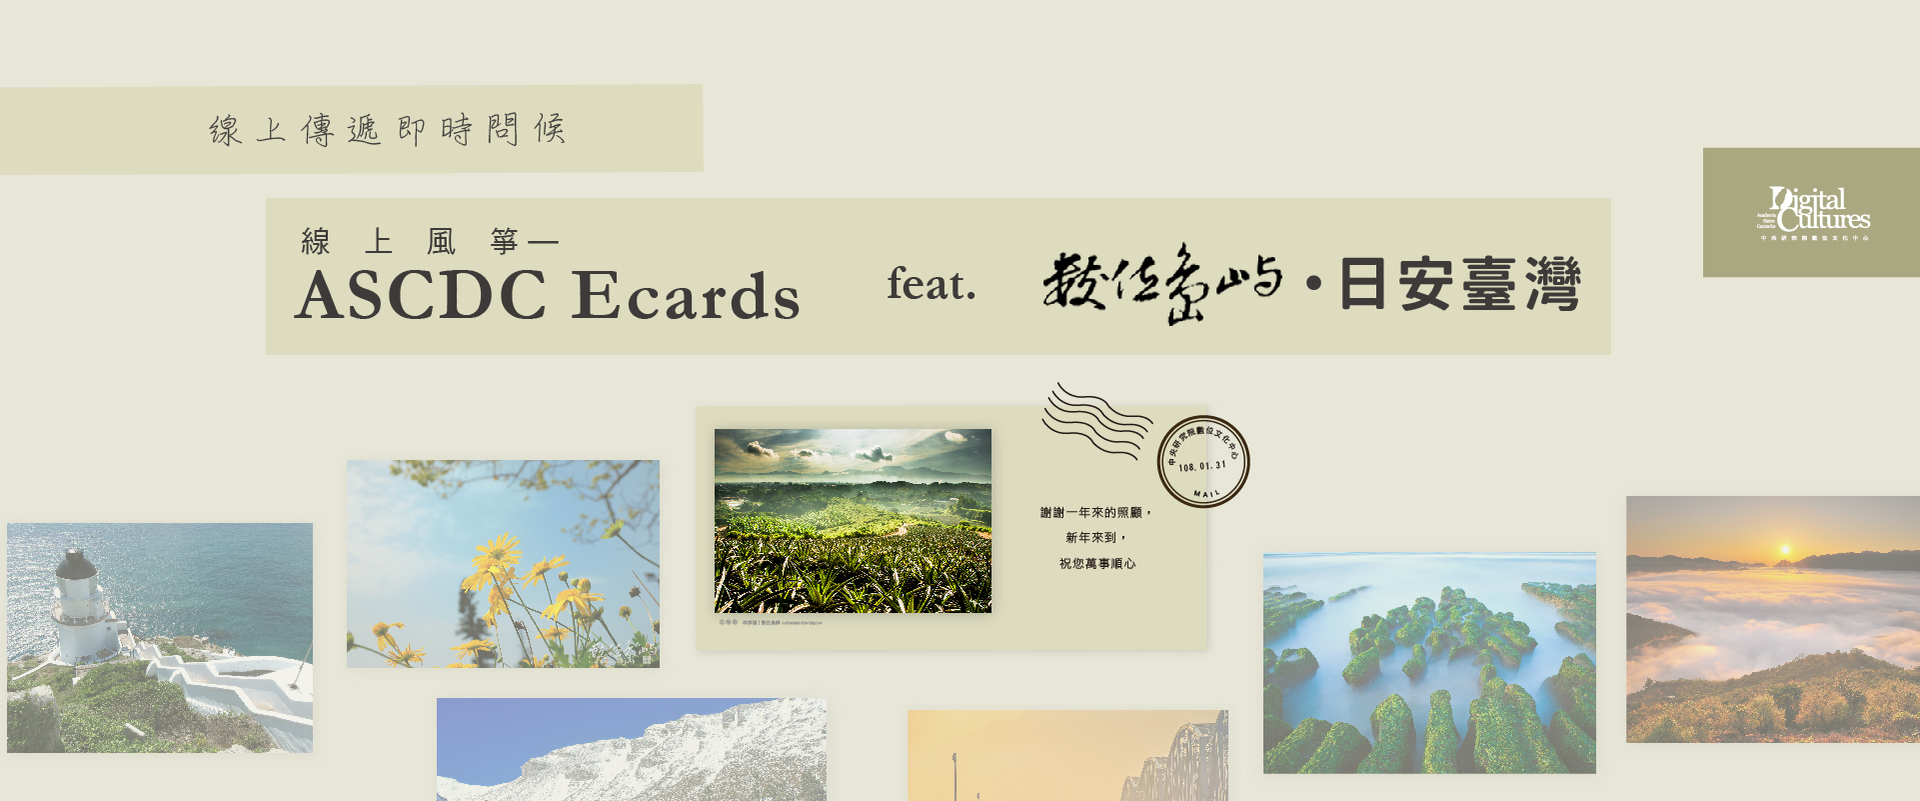 線上傳遞即時問候—線上風箏-ASCDC Ecards feat. 數位島嶼日安臺灣